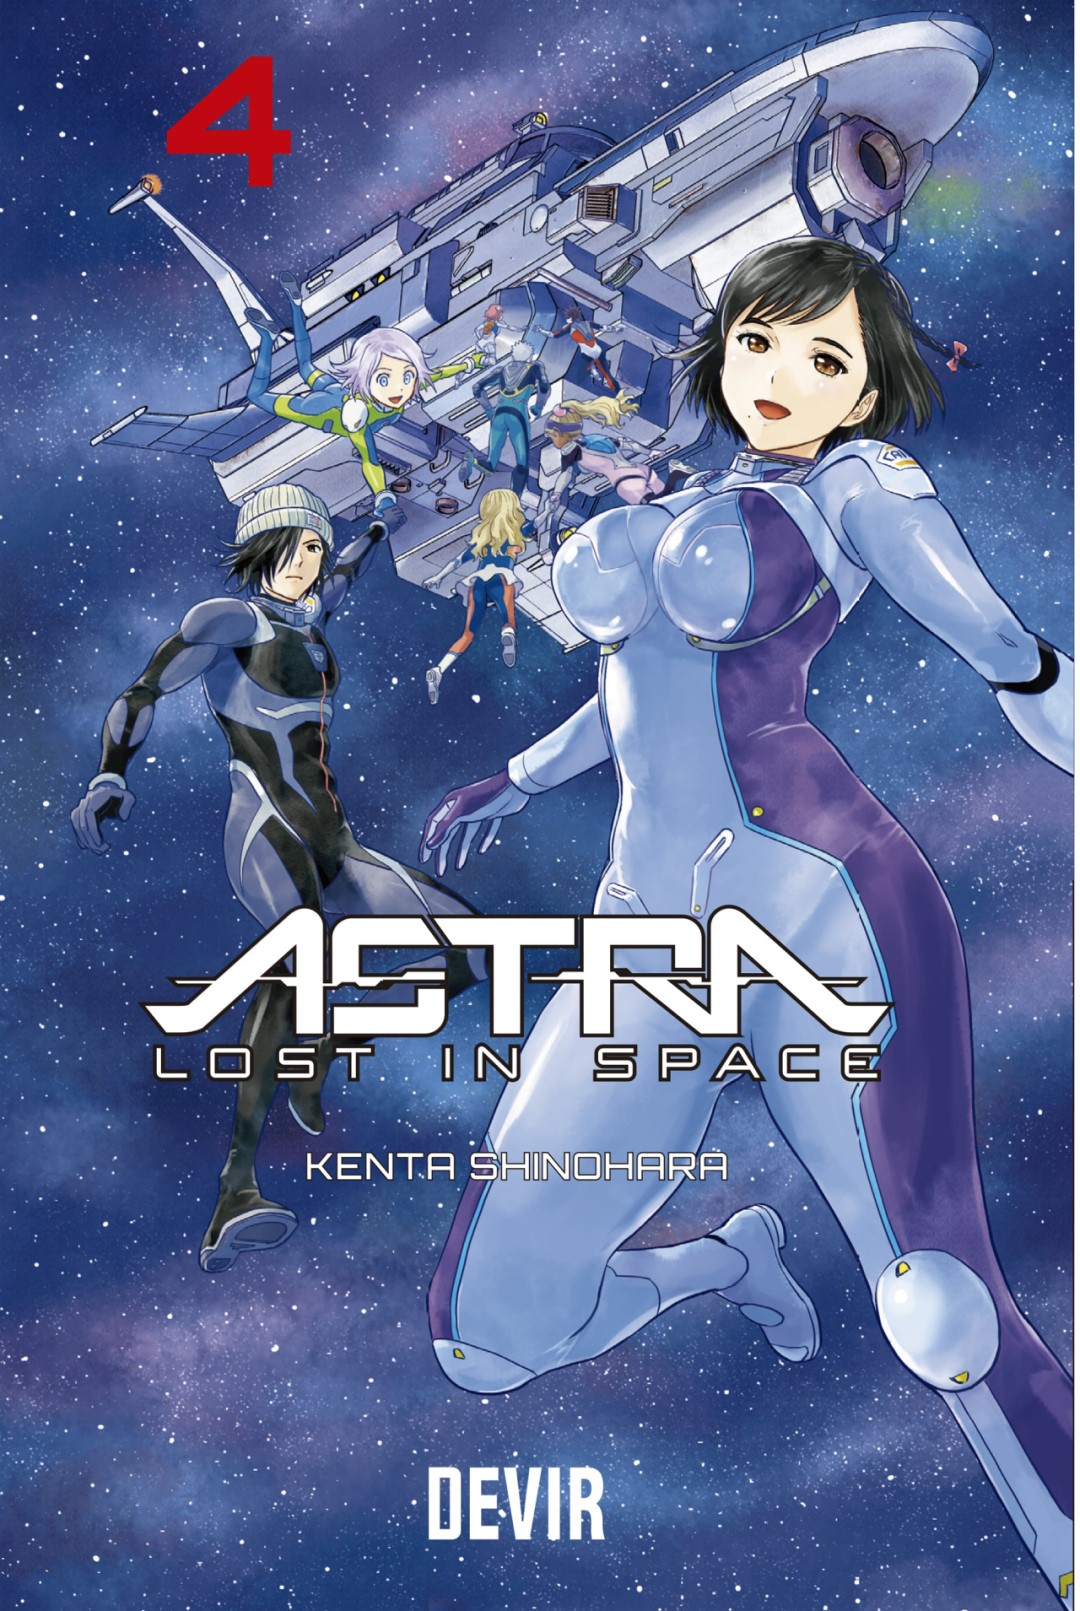 Devir anuncia lançamento de Astra - Lost in Space volume 4